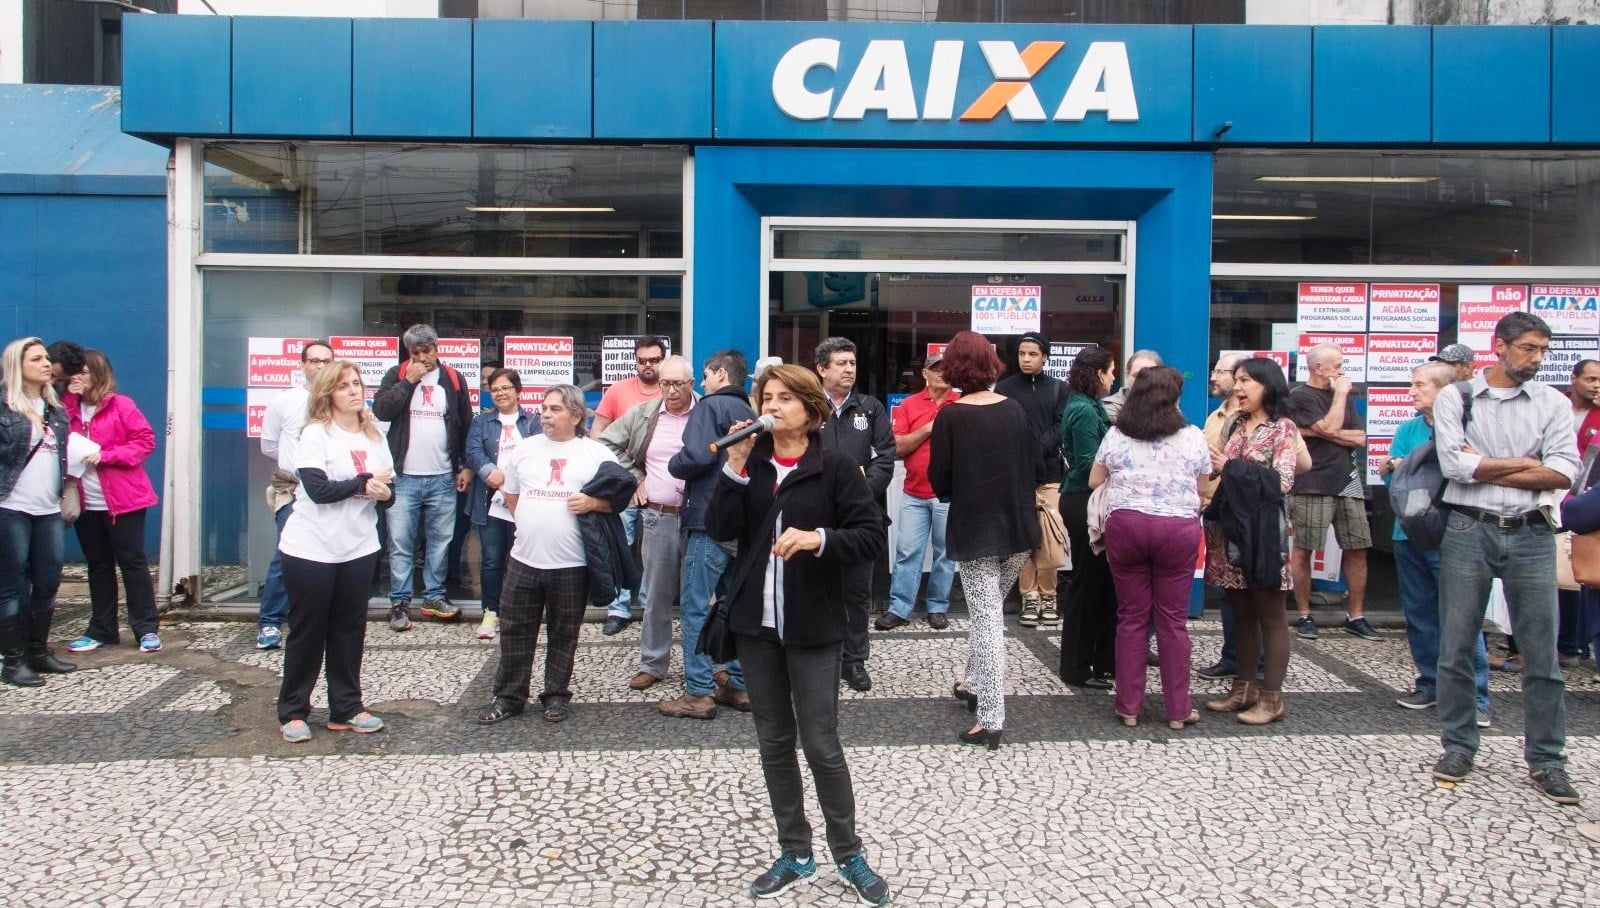 Sindicato dos Bancários de Santos e Região conquista vitória histórica para trabalhadores da Caixa Econômica